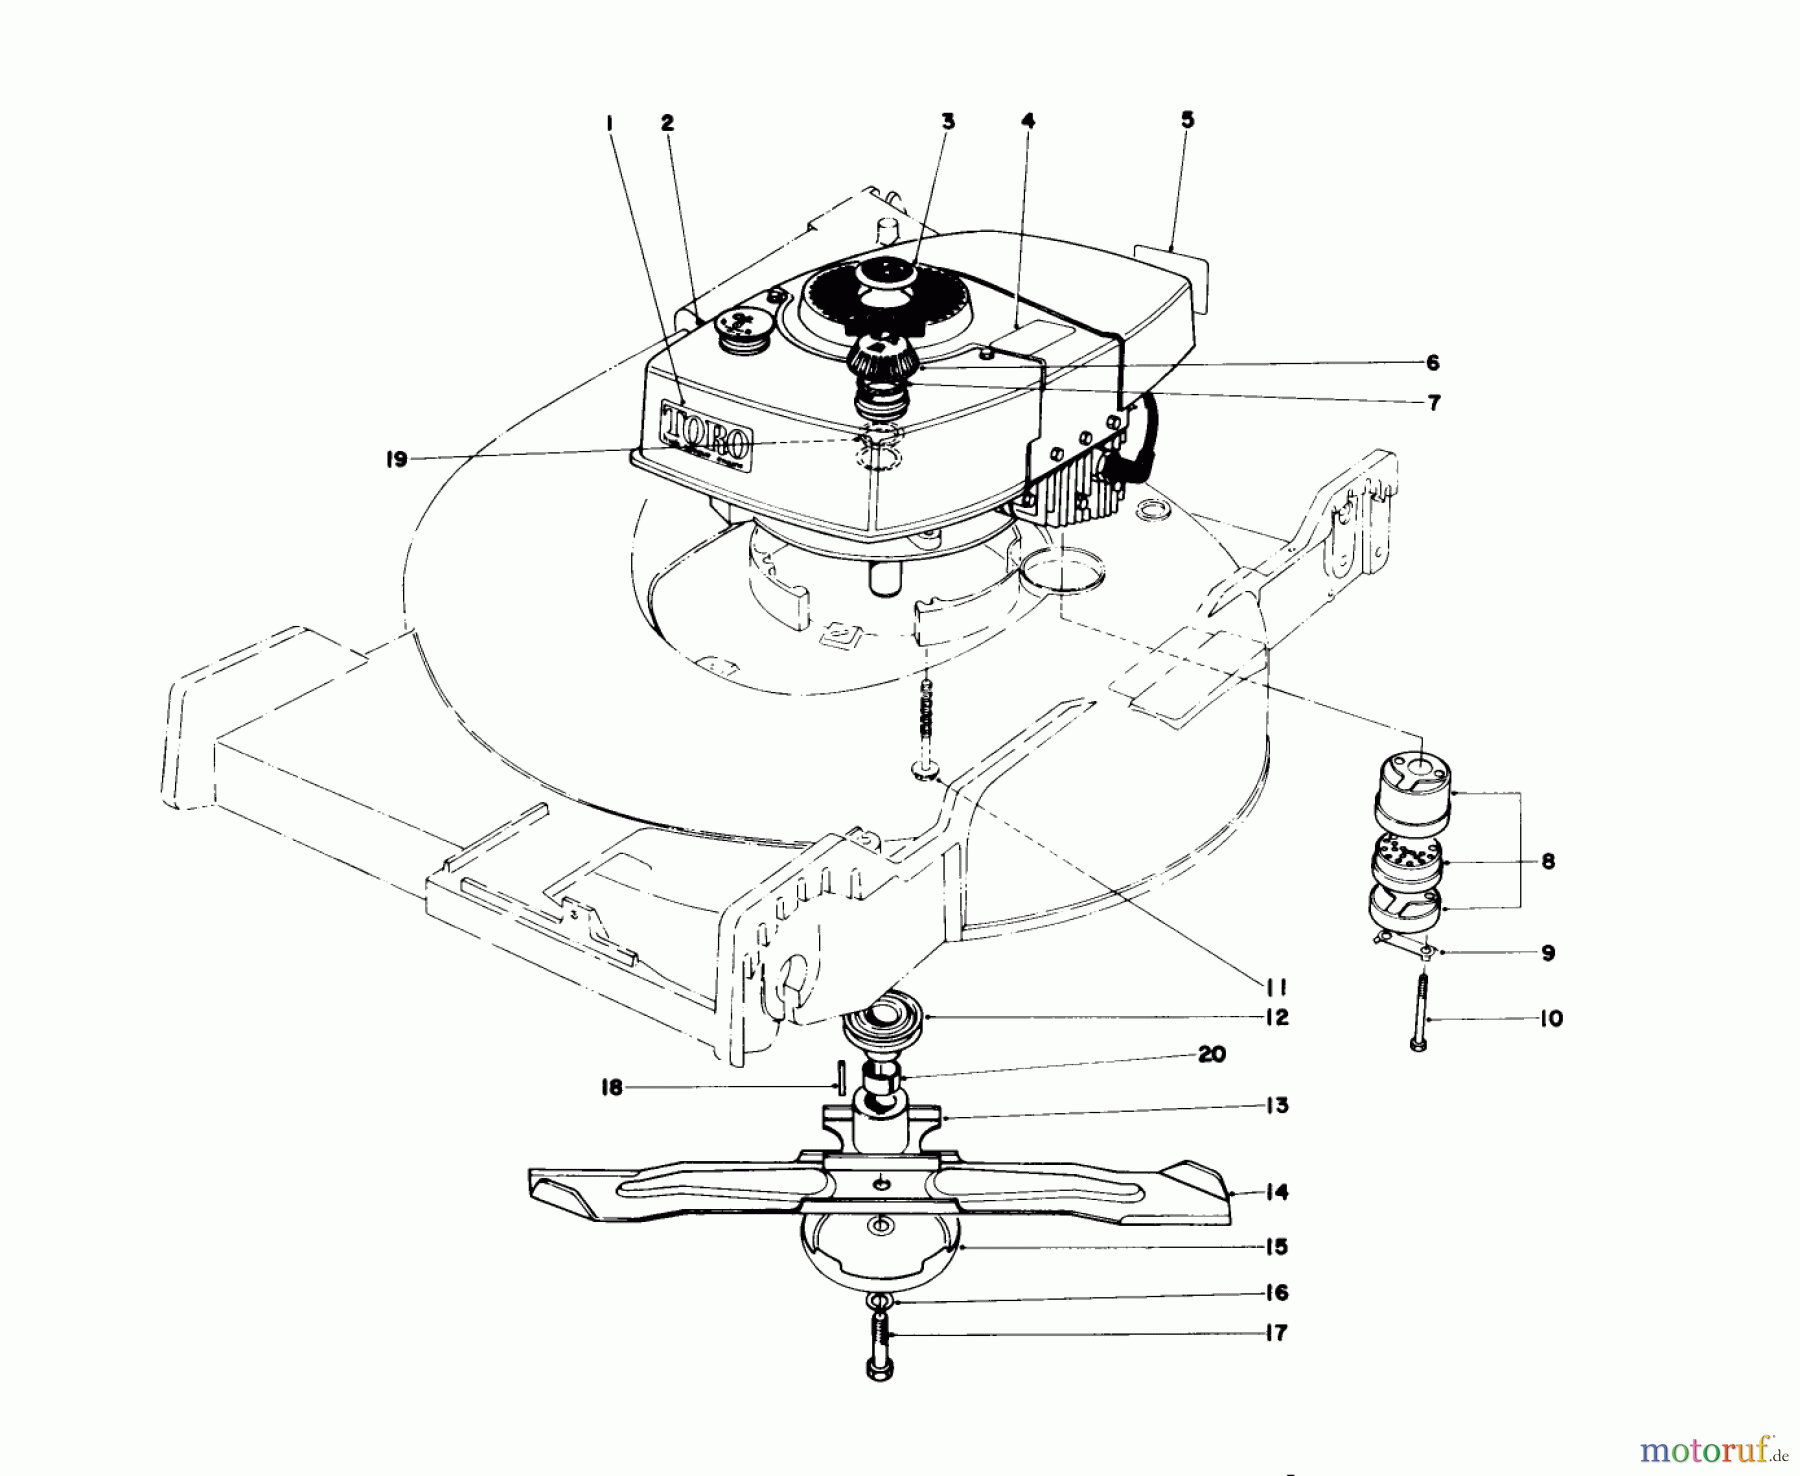  Toro Neu Mowers, Walk-Behind Seite 1 20657 - Toro Lawnmower, 1977 (7000001-7999999) ENGINE ASSEMBLY (MODEL NO. 20517)